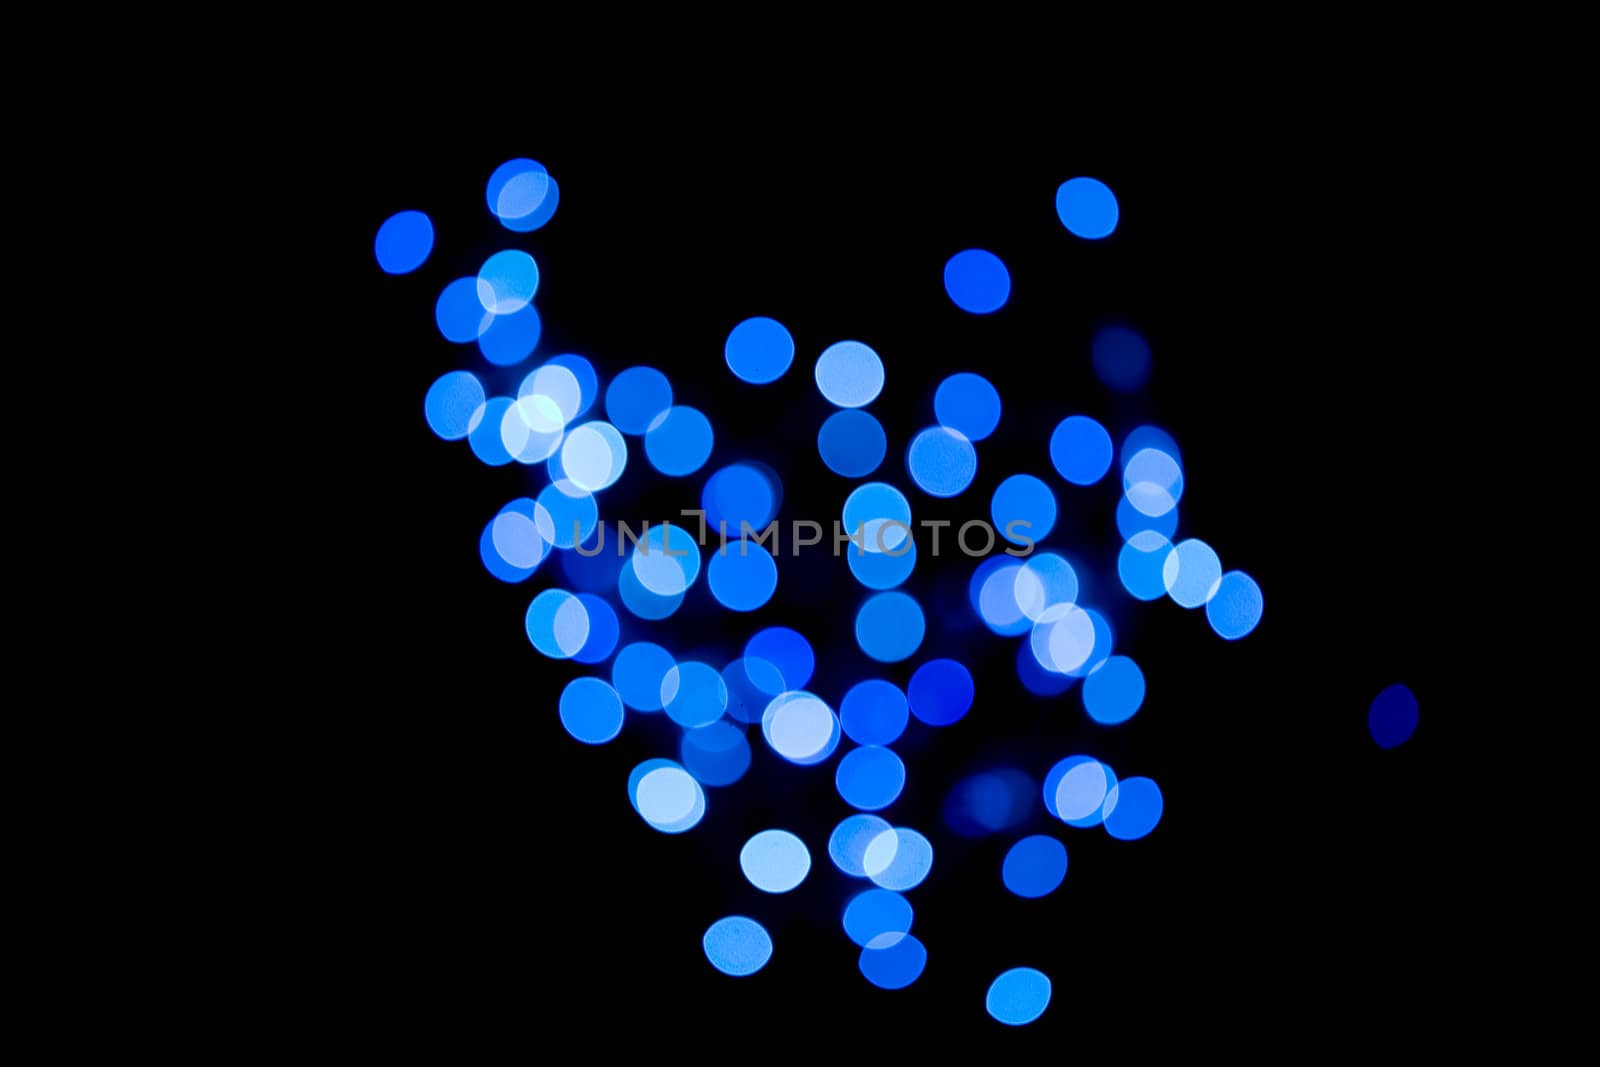 Blue defocused lights against black background